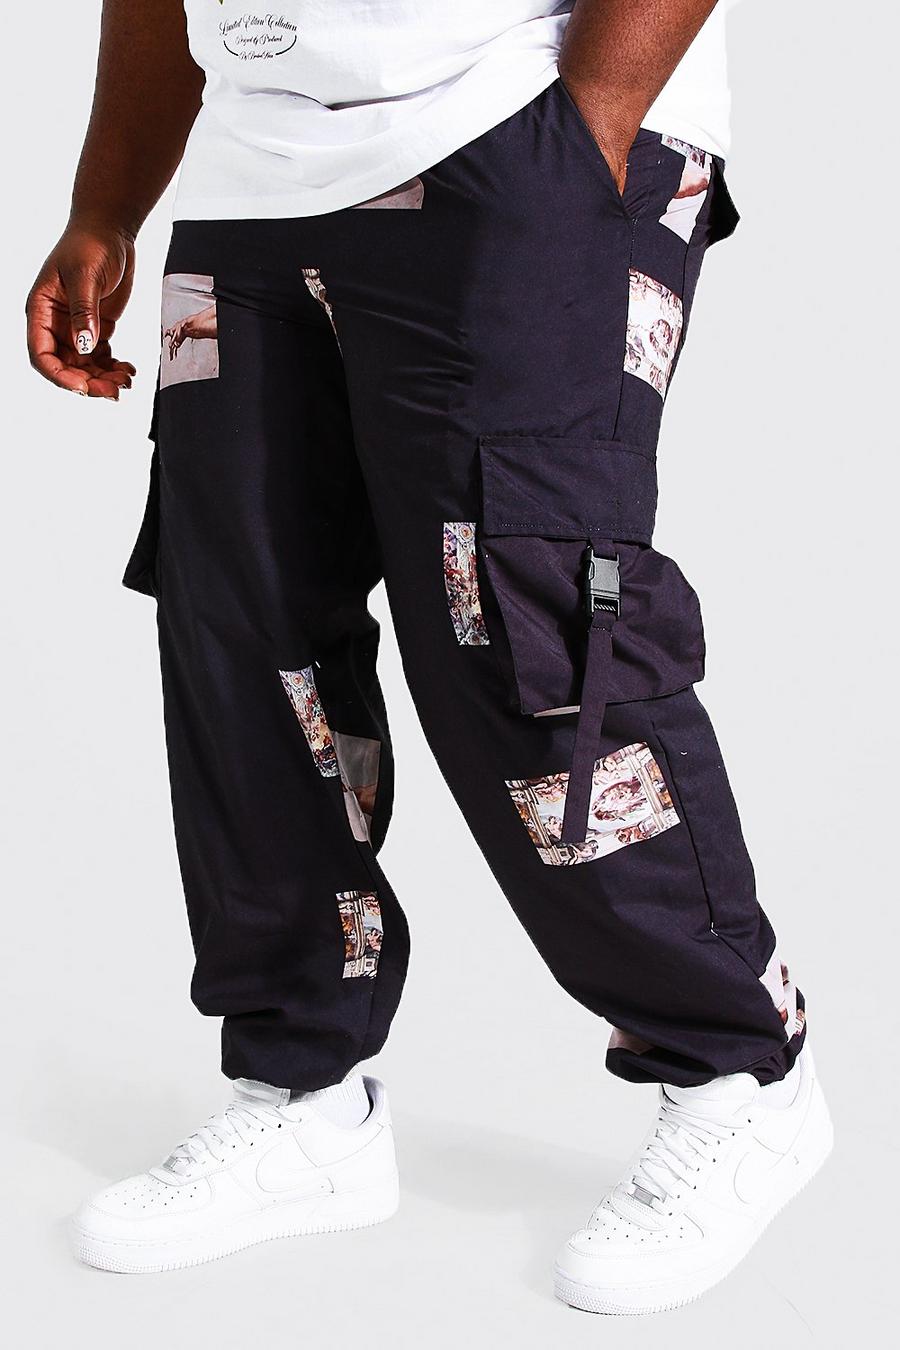 שחור מכנסי דגמ"ח Man מבד עמיד עם עיטורי תמונות רנסנס, מידות גדולות image number 1